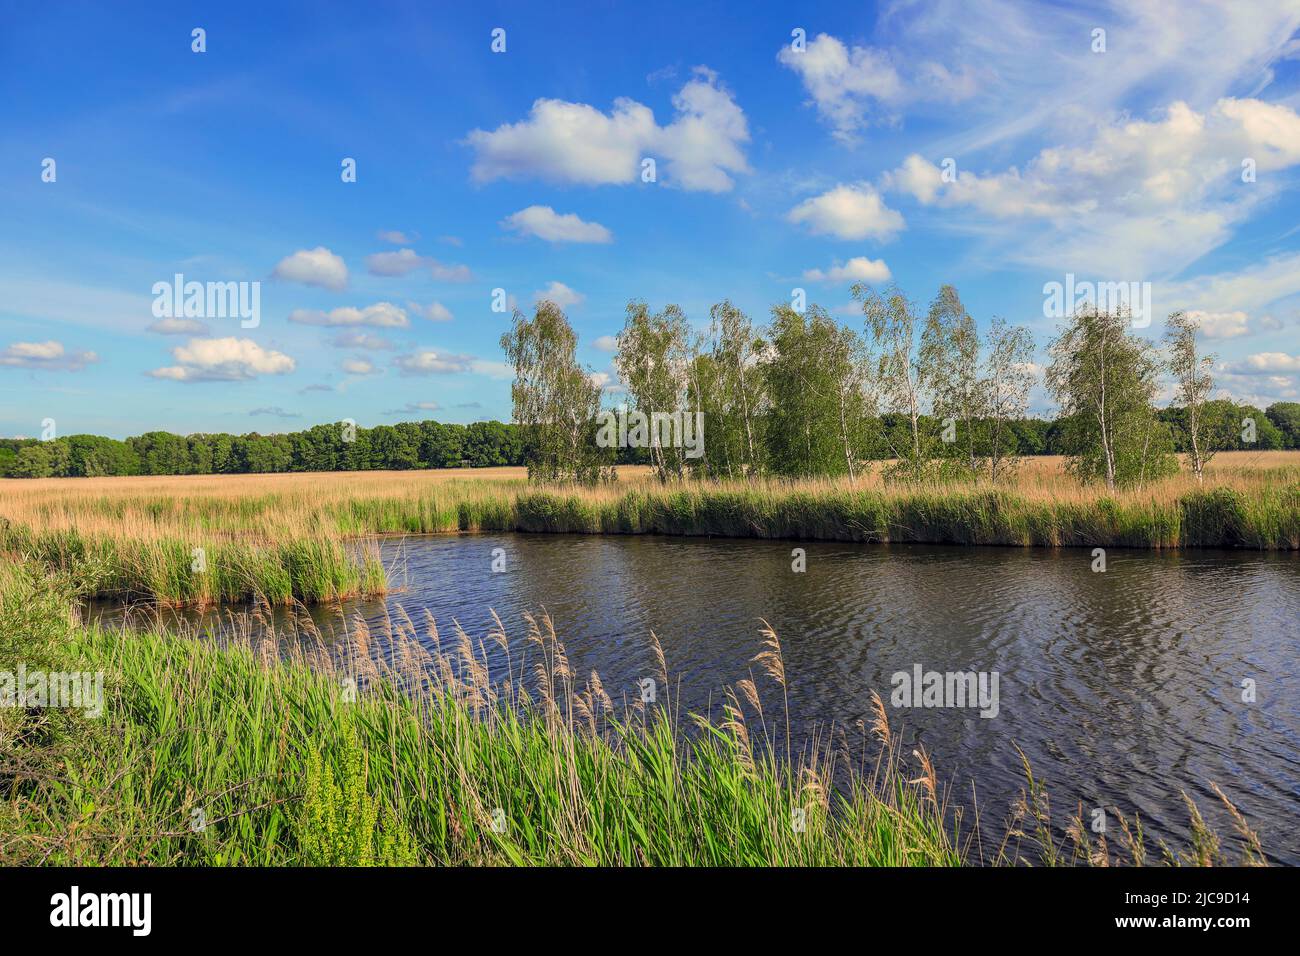 Nella riserva naturale di Lübeck - Schellhorn, nella Germania settentrionale, si trovano numerose lagune e alberi di betulla. Foto Stock